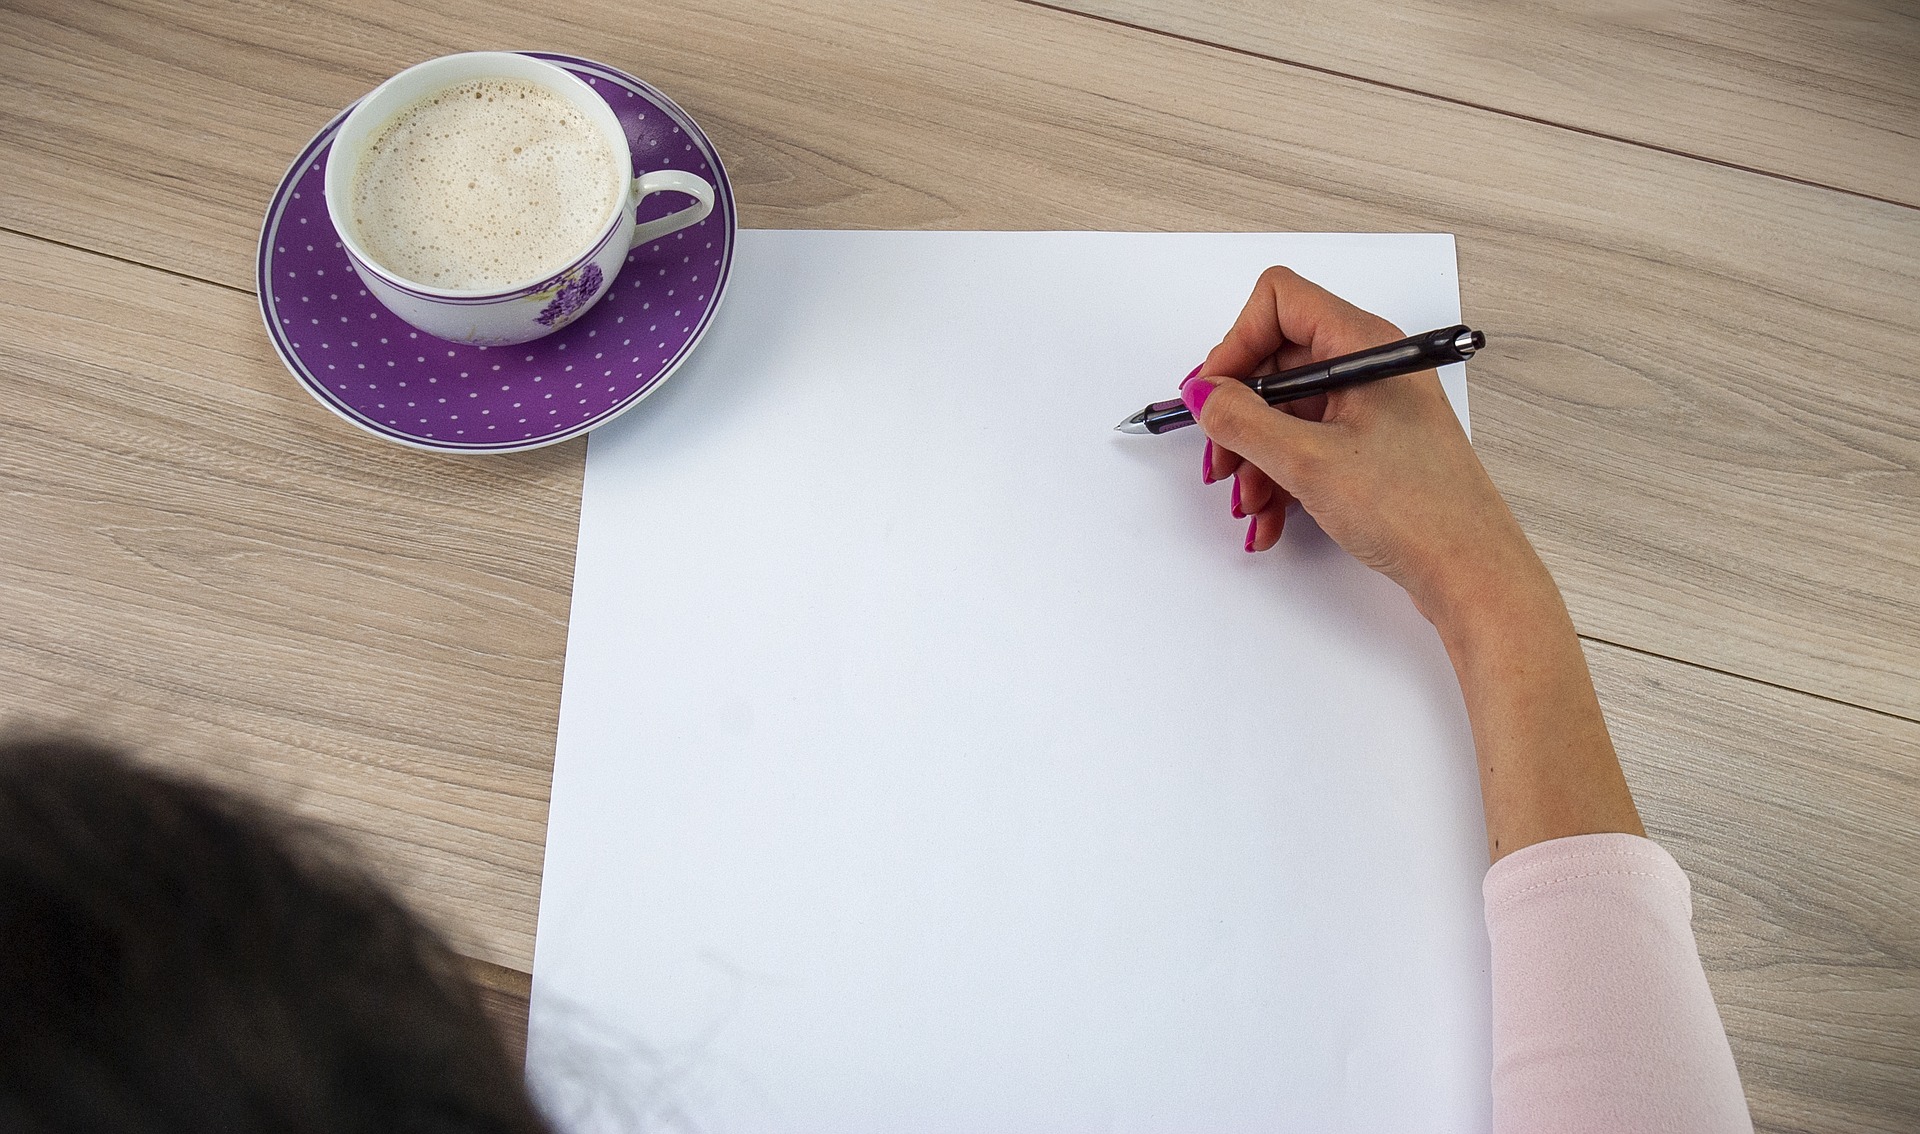 Uma mão segura uma caneta sobre uma folha de papel em branco com uma xícara de café ao lado.